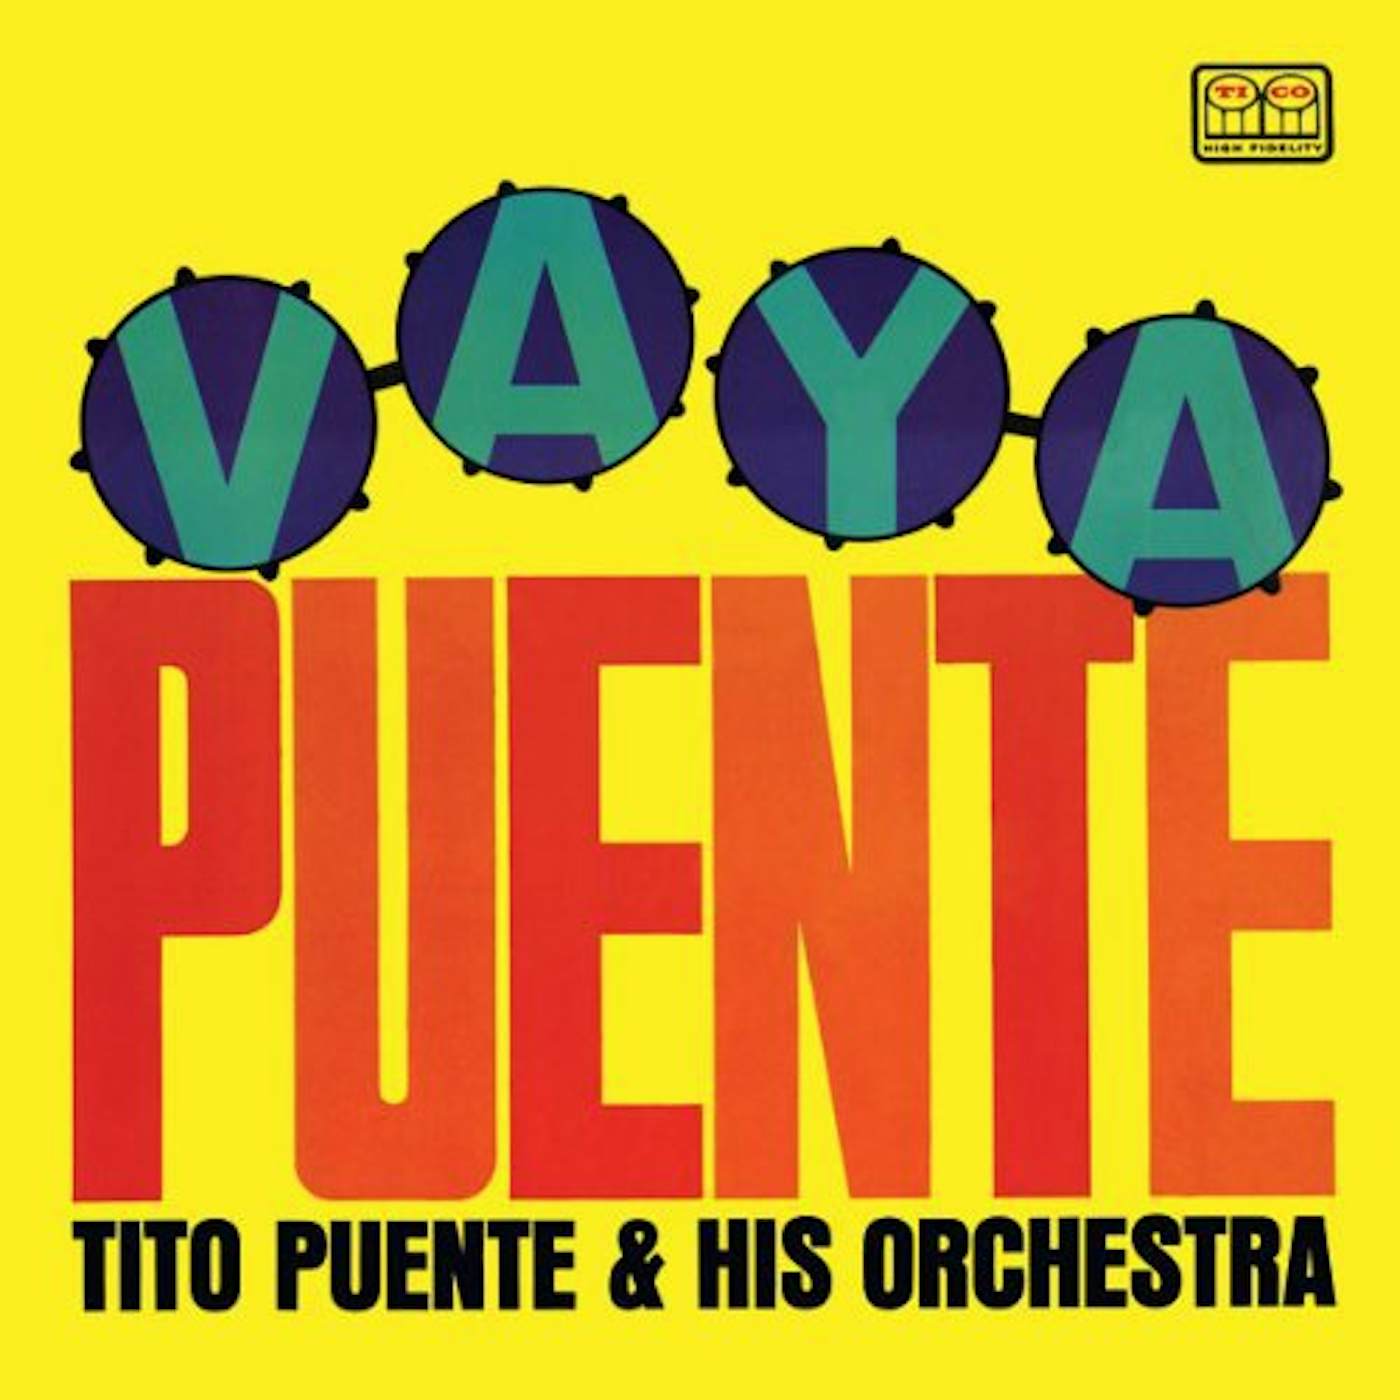 Tito Puente VAYA PUENTE Vinyl Record